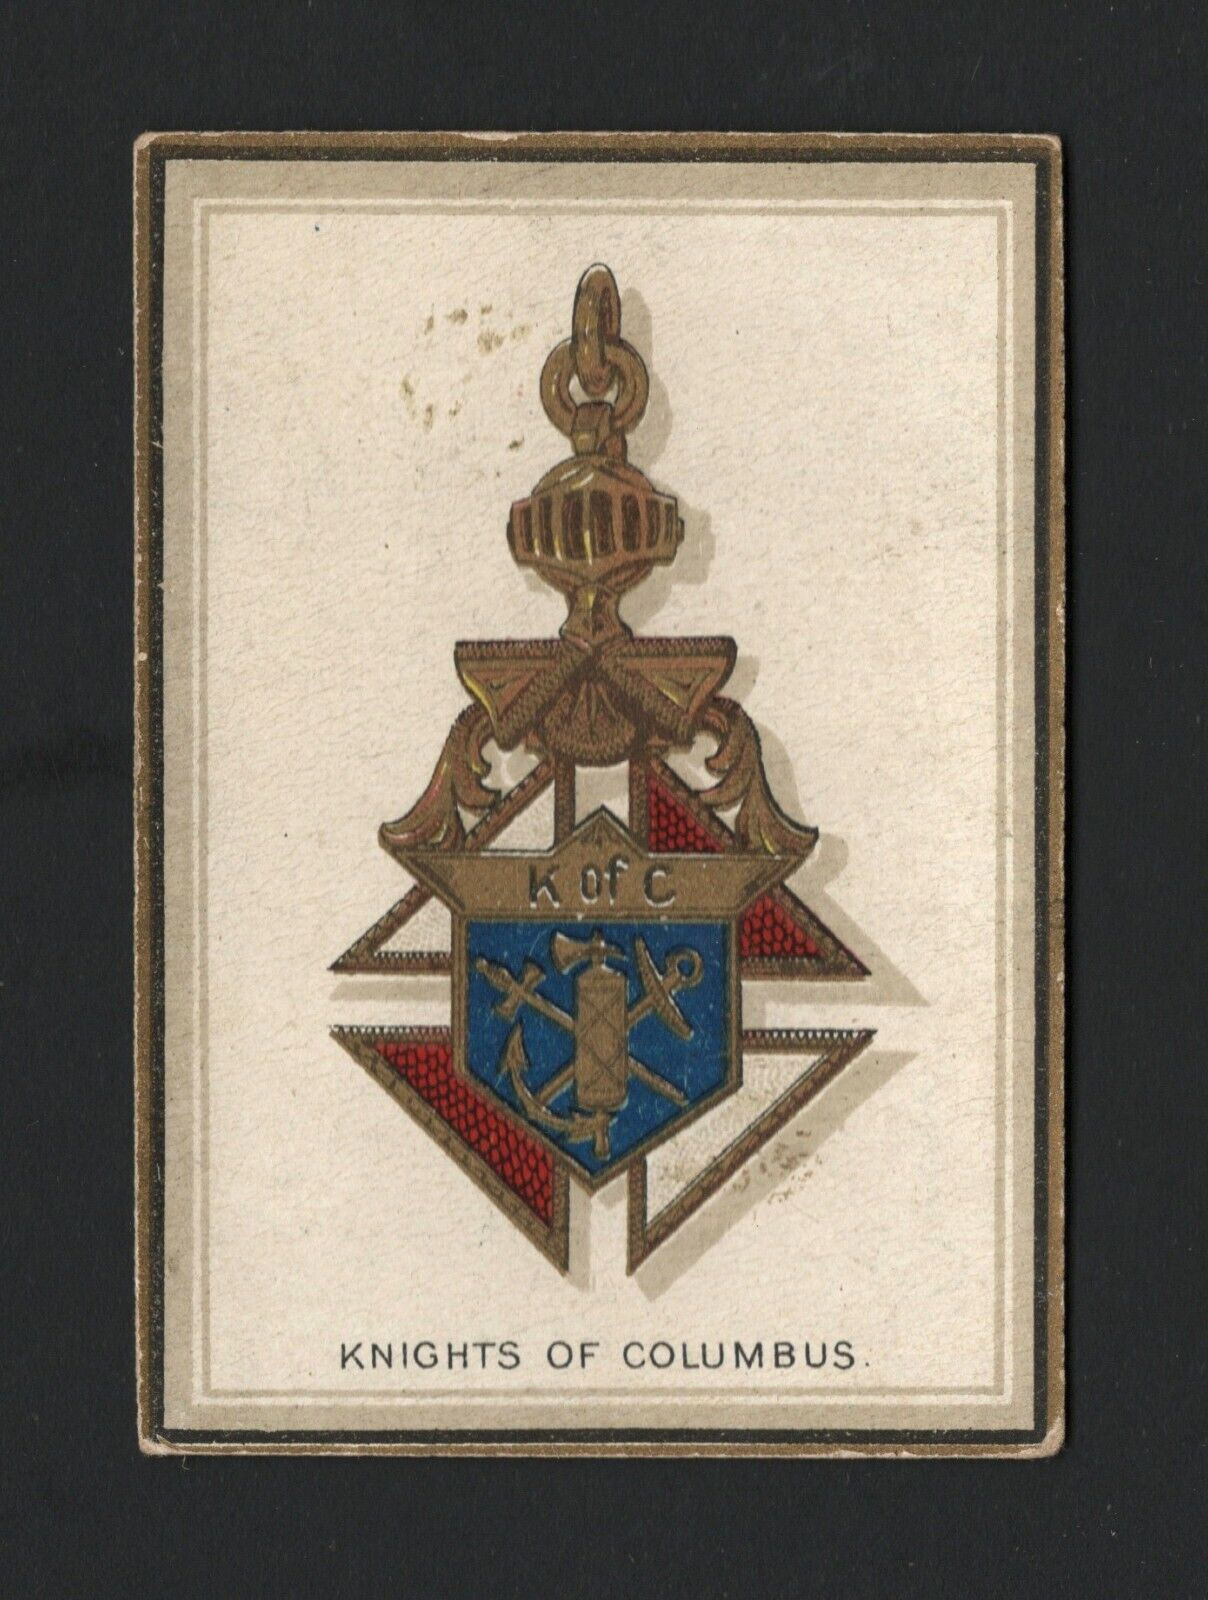 1911 Emblem Cigarettes Emblem Series #27 – Knights of Columbus